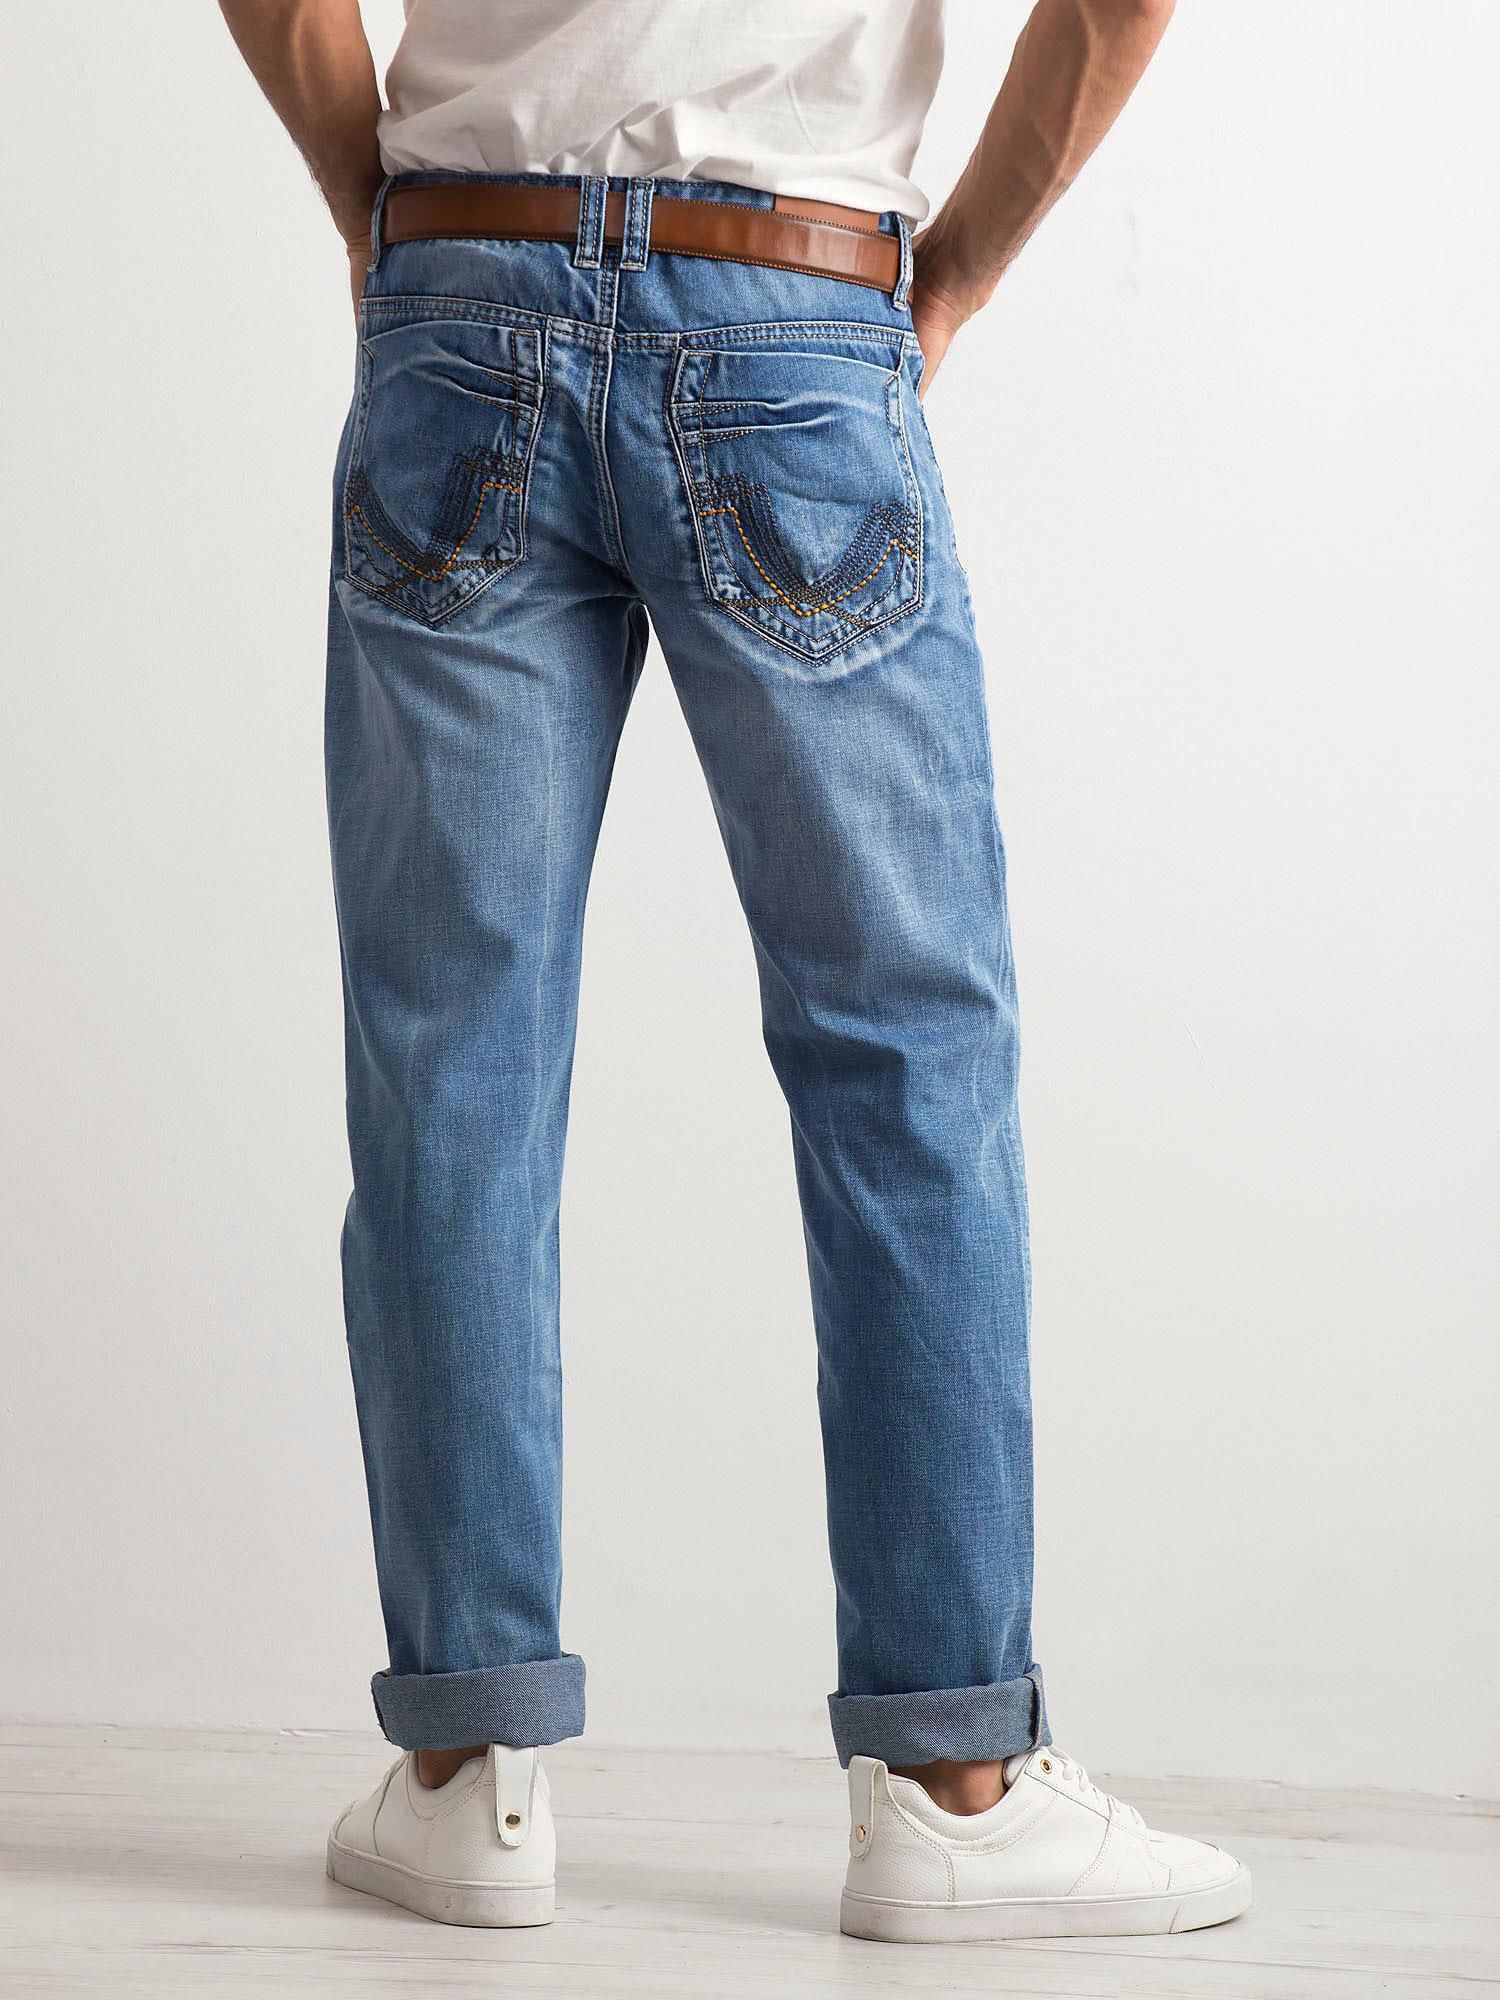 Купить джинсы мужские красноярск. Регуляр фит джинсы мужчины. Regular Fit джинсы мужские. Рь джинсы мужские Regular Fit. Мужские джинсы вид сбоку.